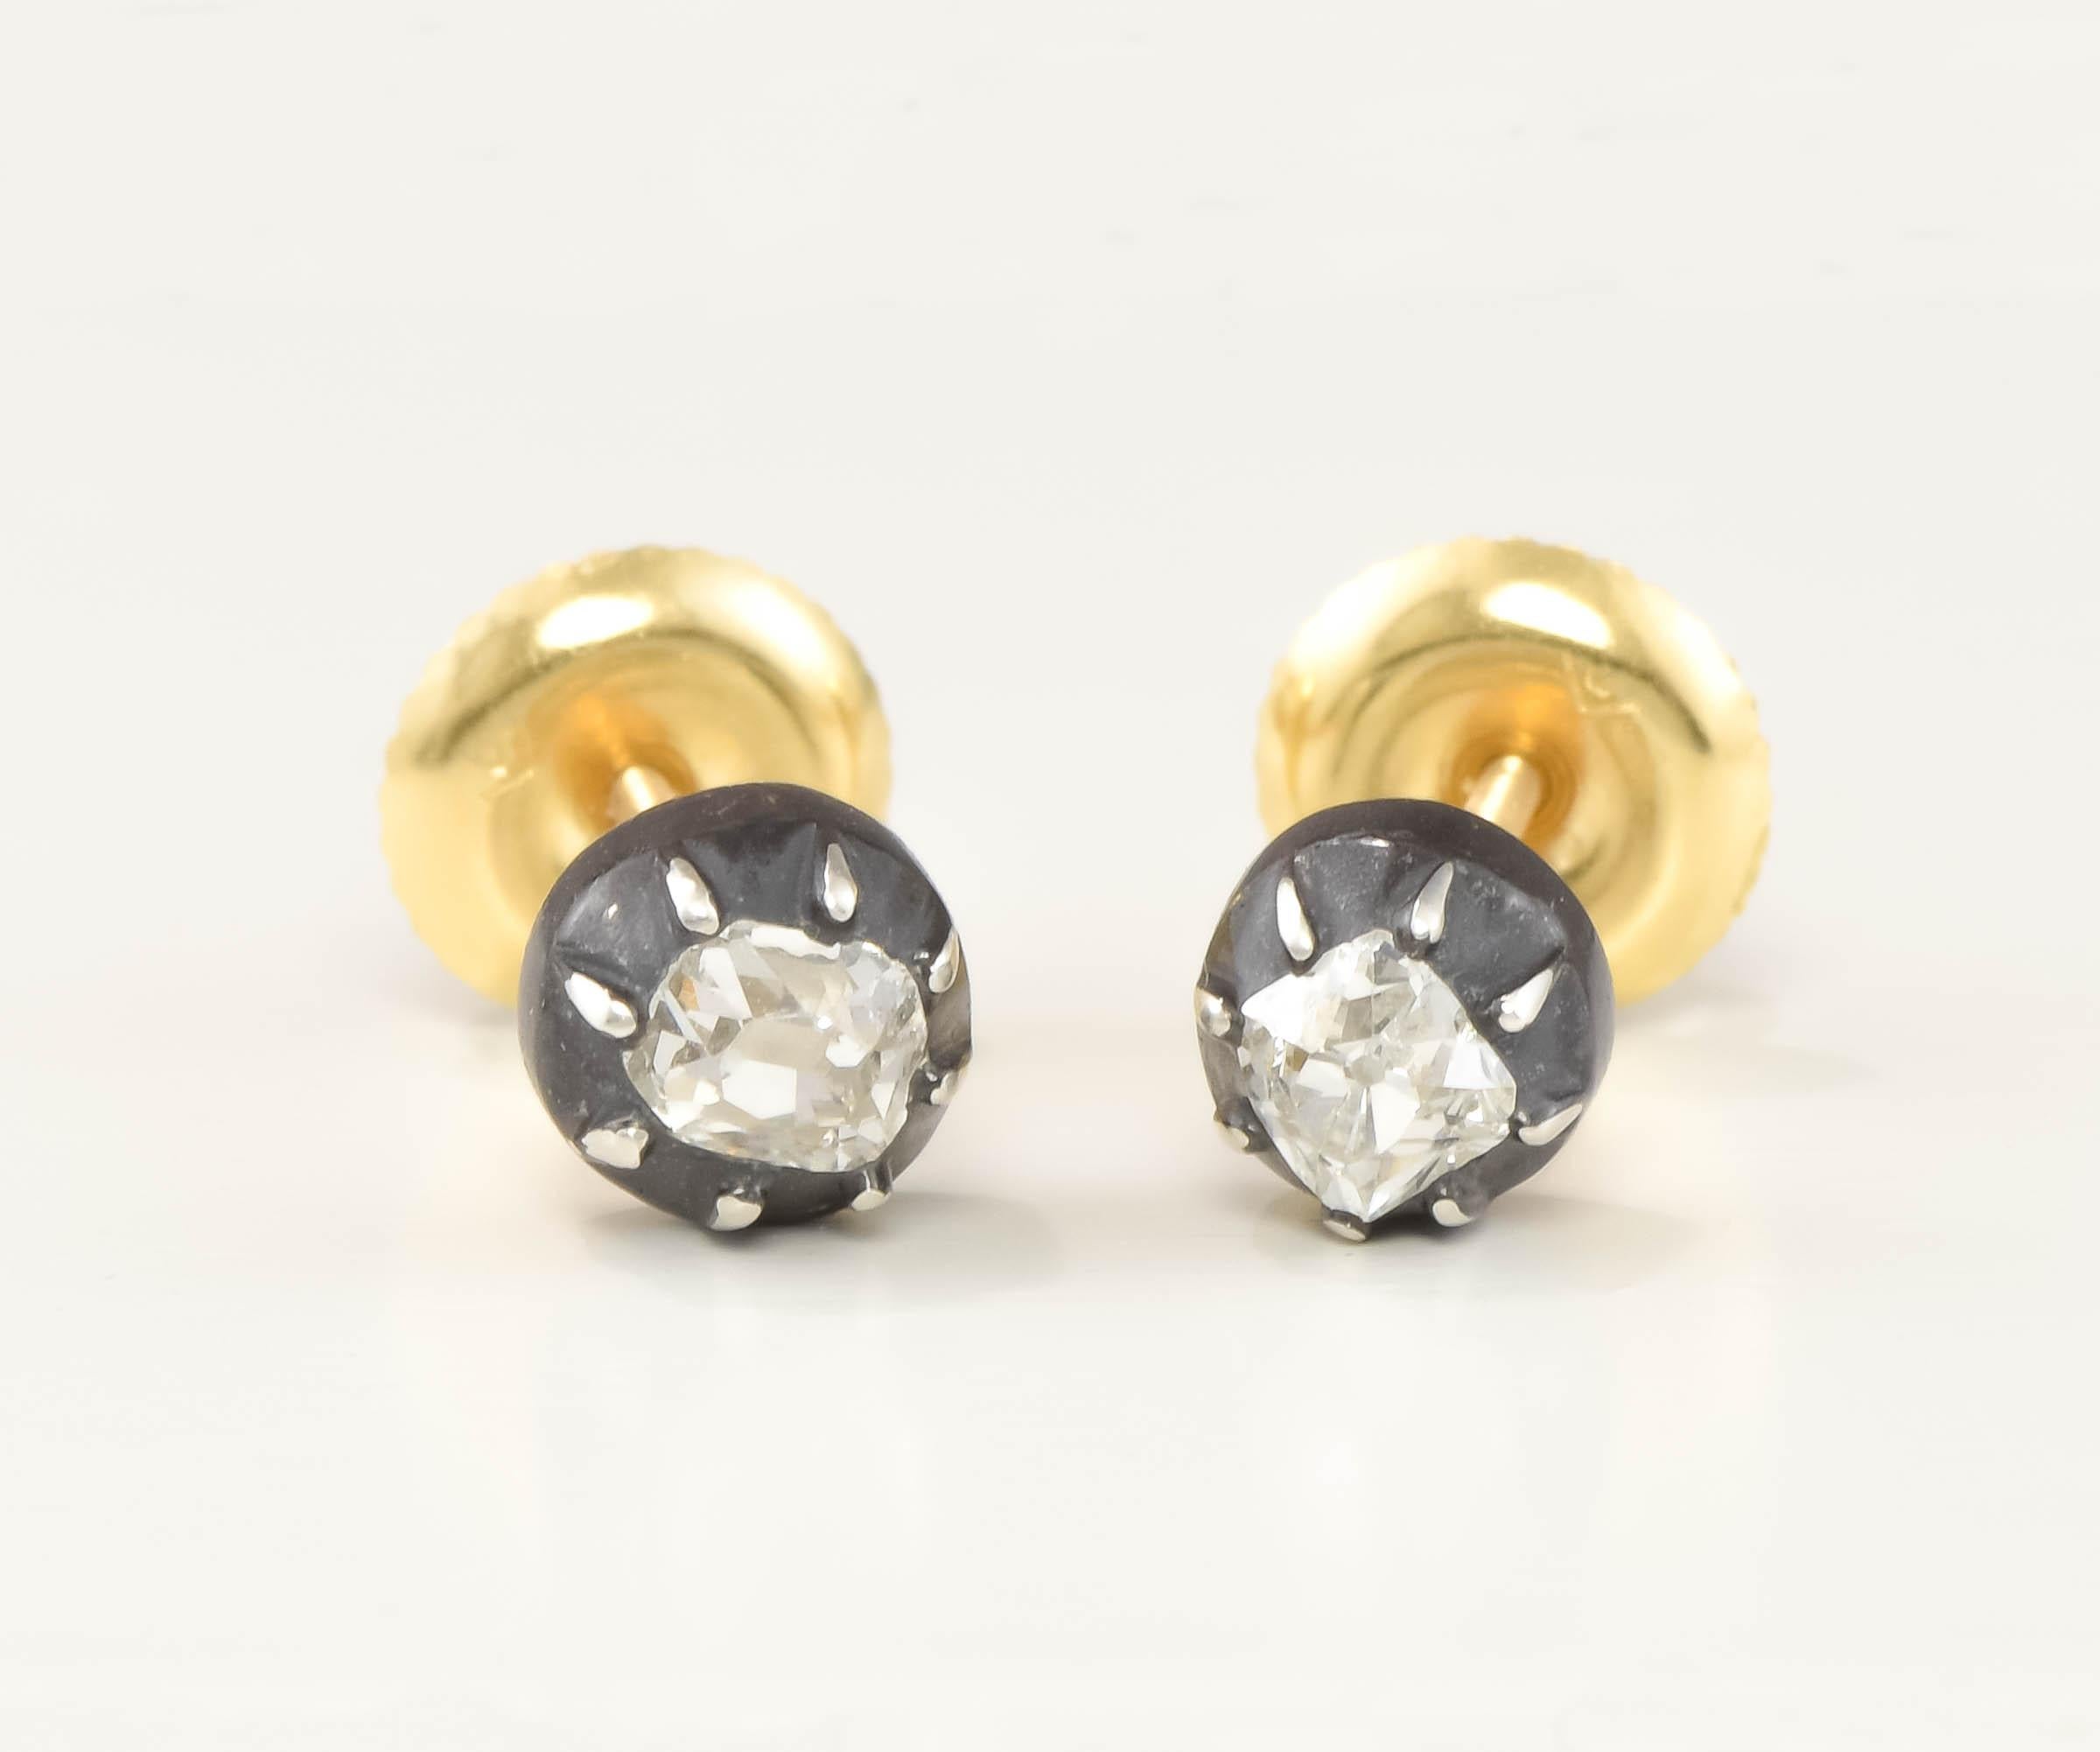 Georgian Old Mine Cut Diamond Stud Earrings in Silver & 18K Gold 2